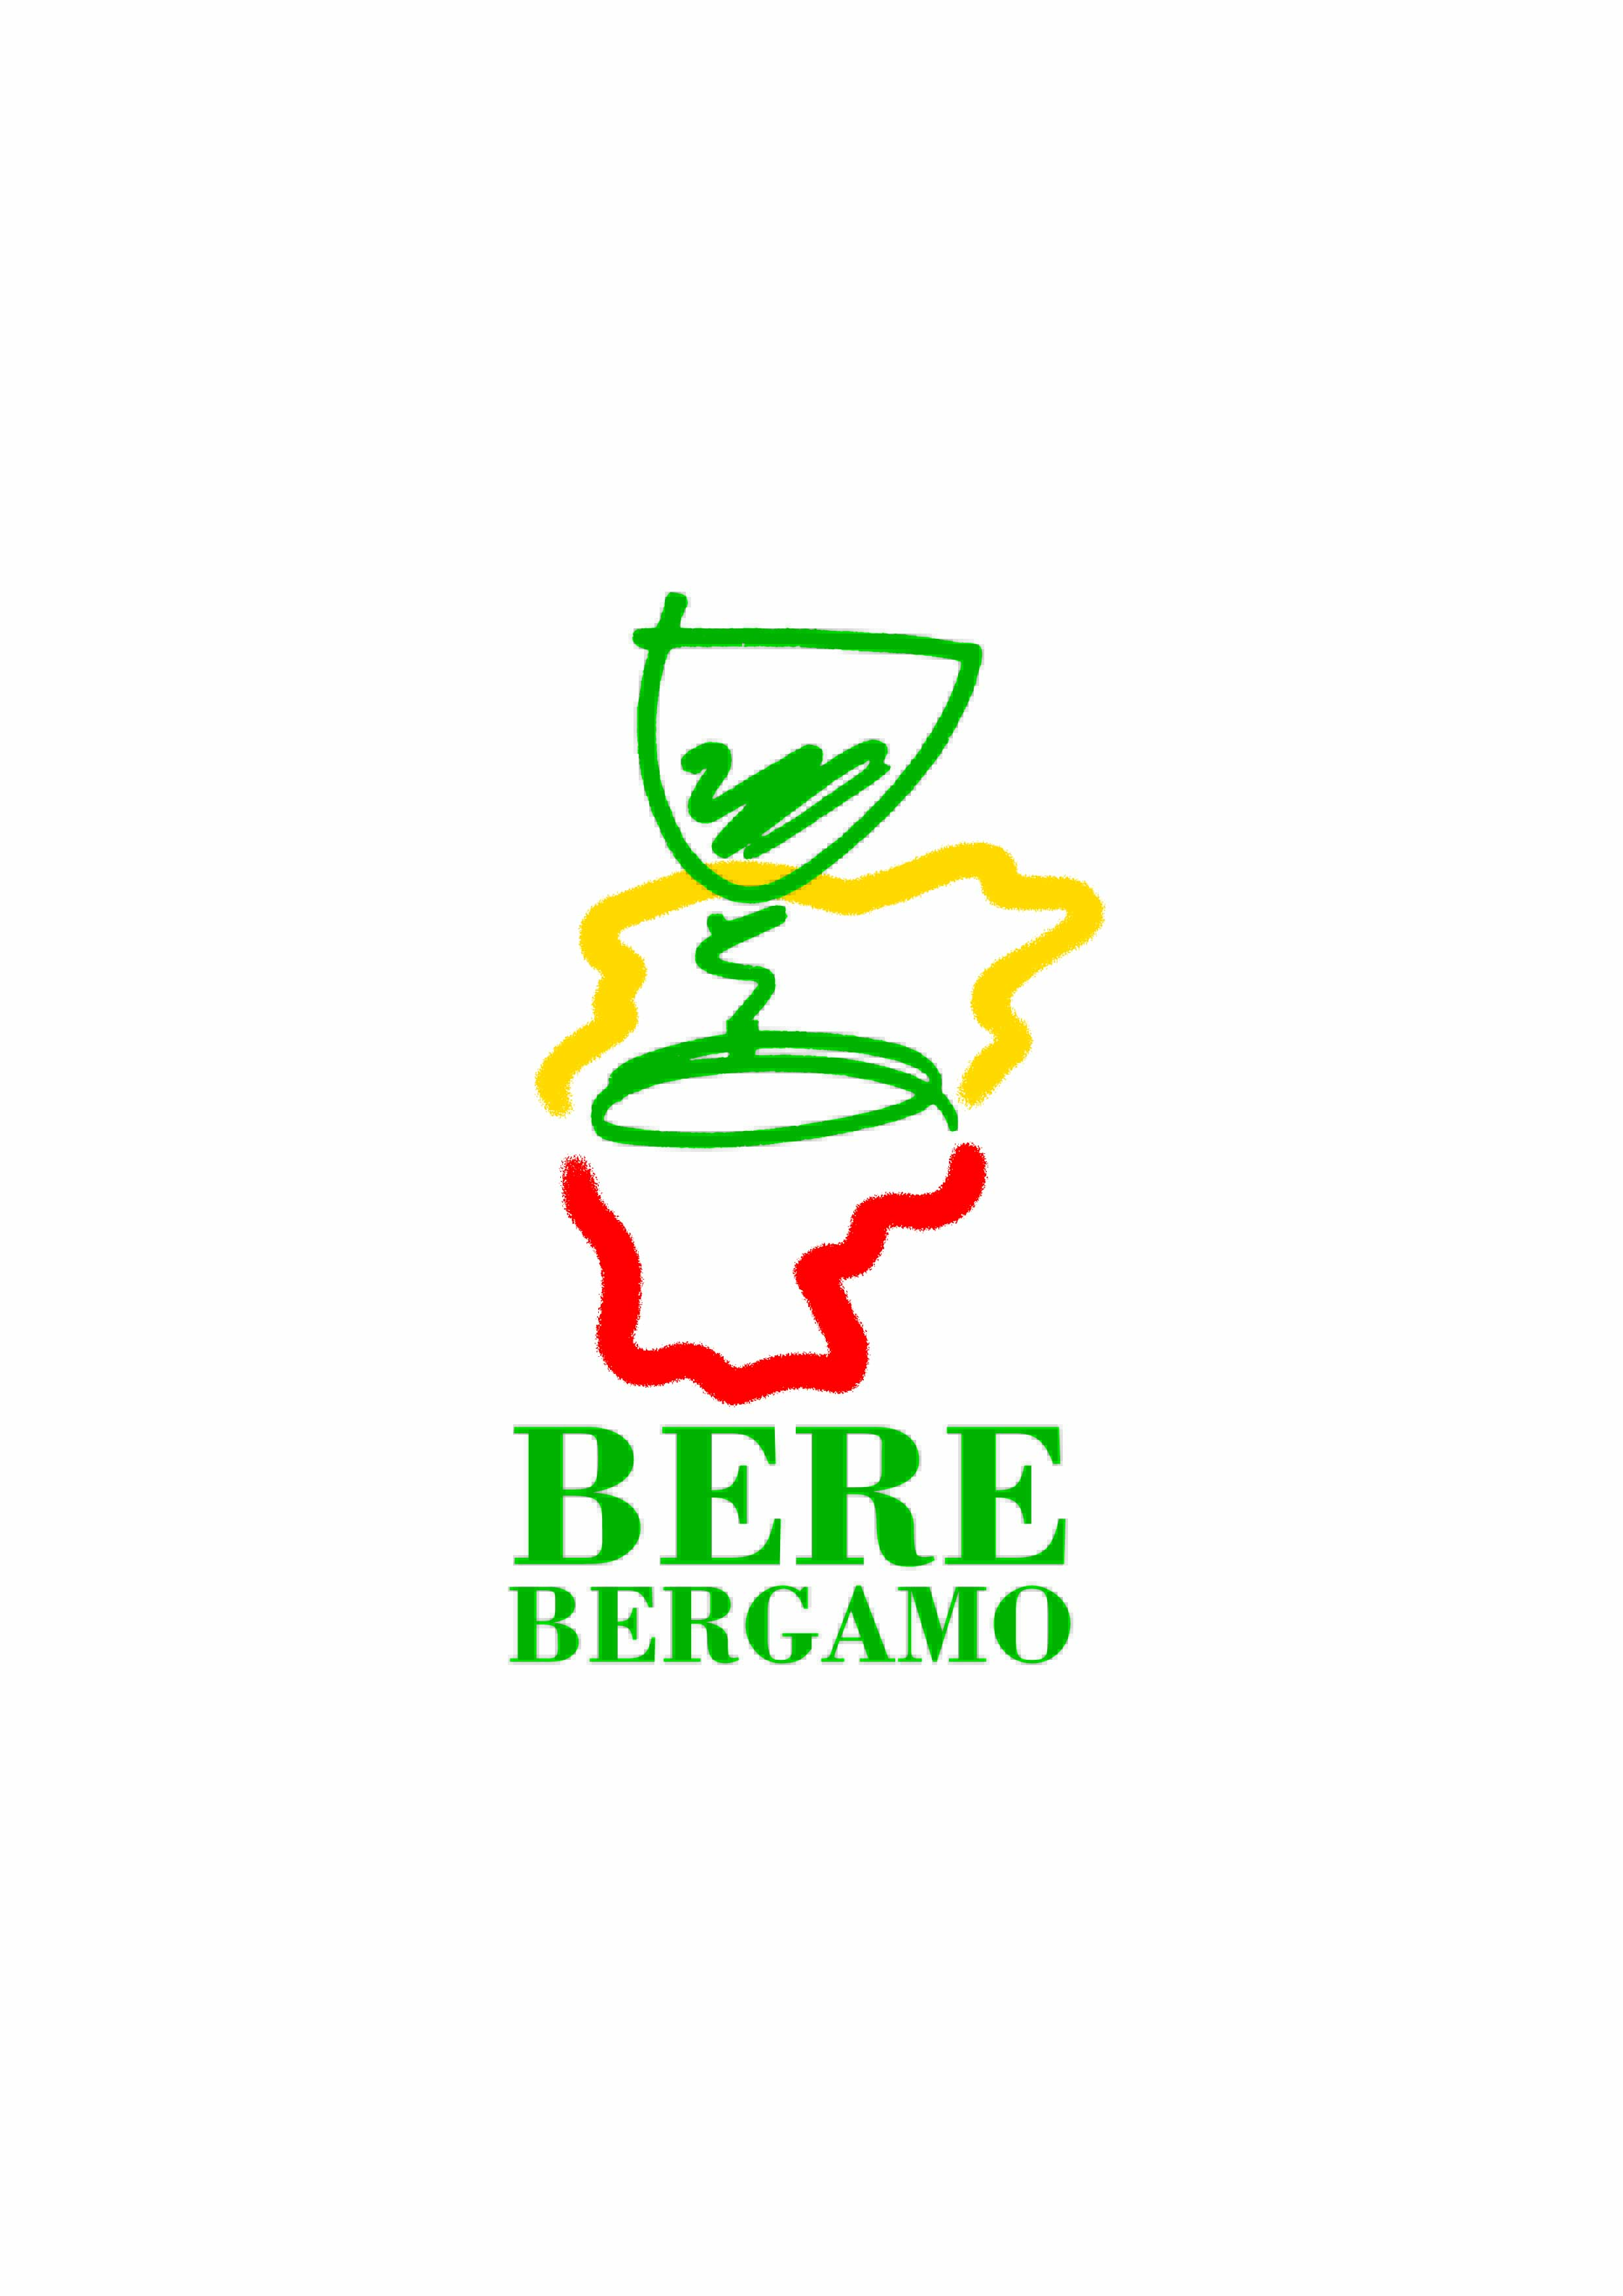 LOGO BERE BERGAMO ORIGINALE